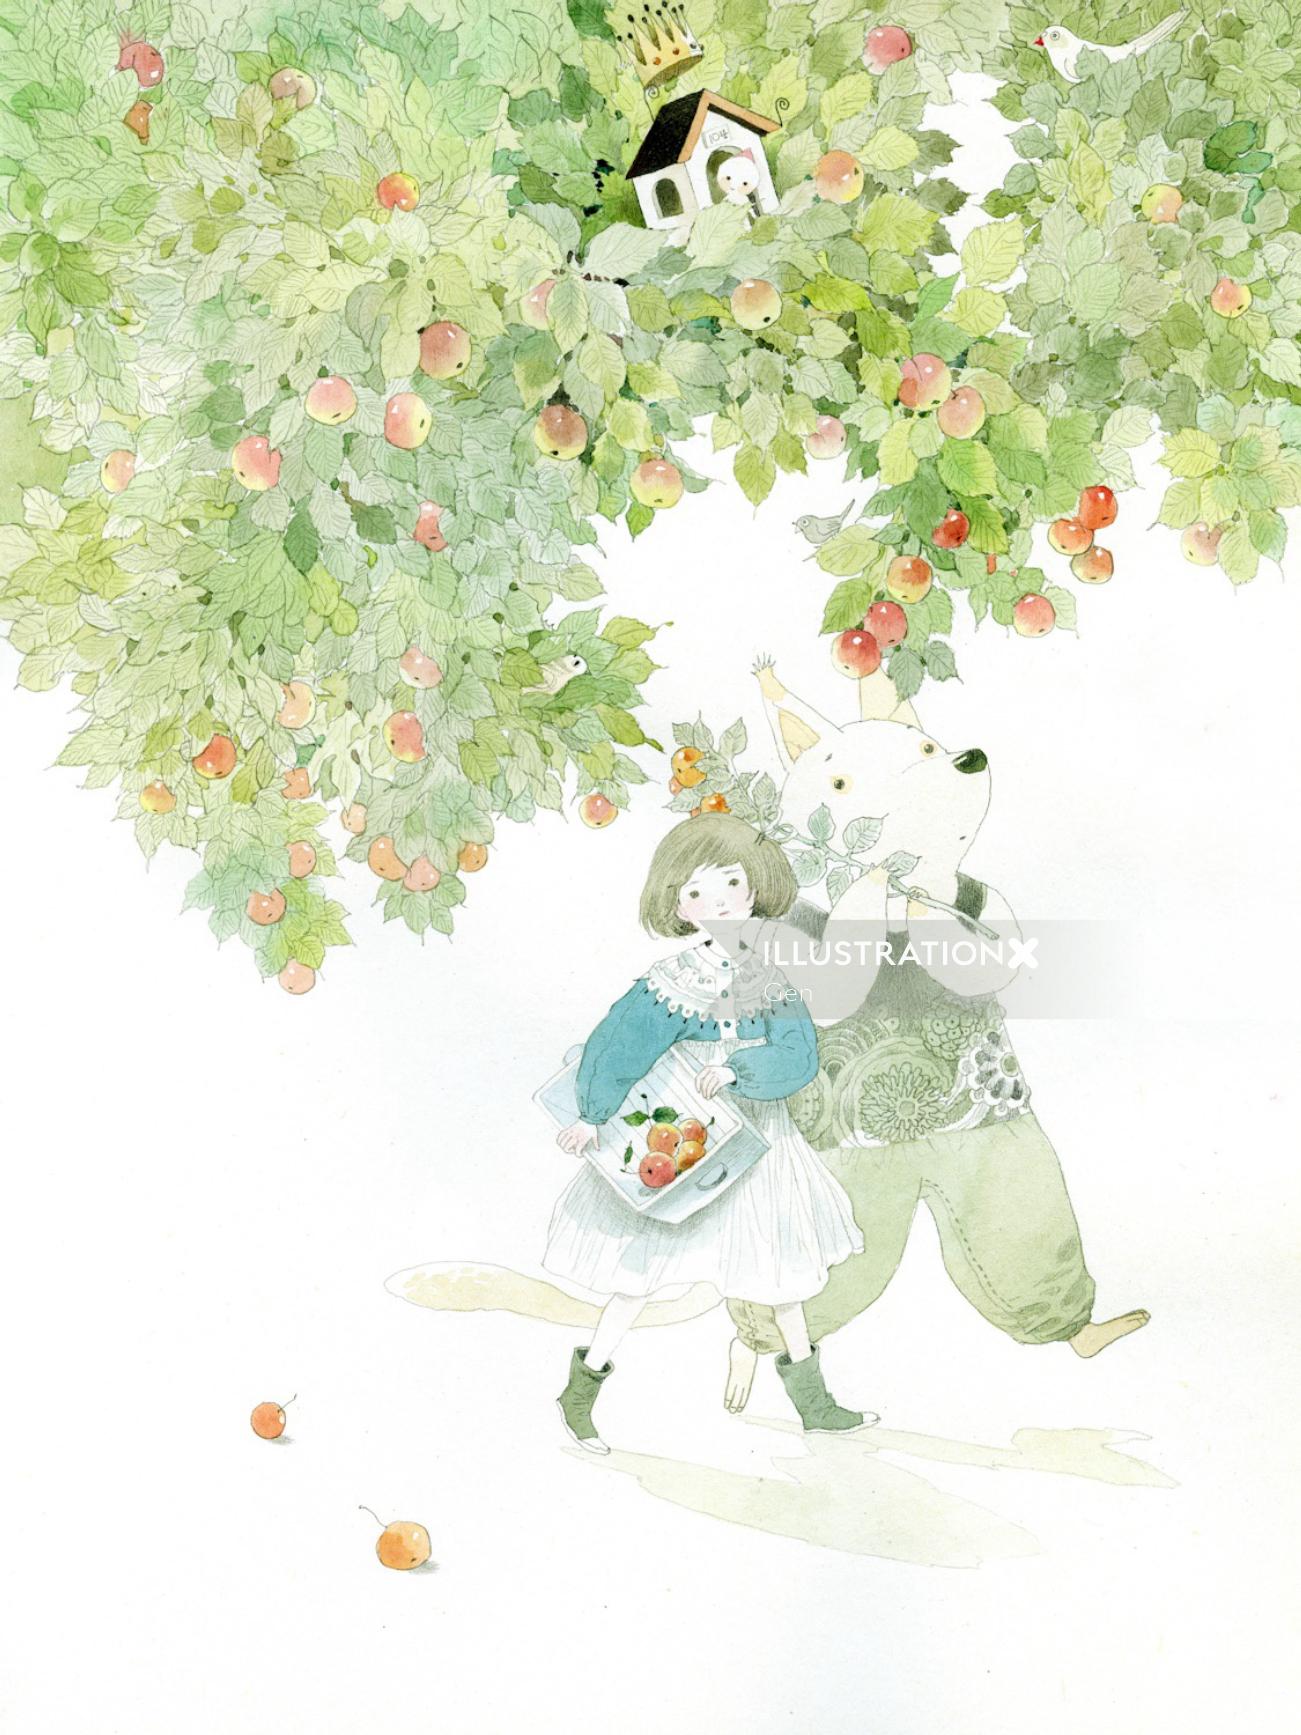 children walking under apple tree
